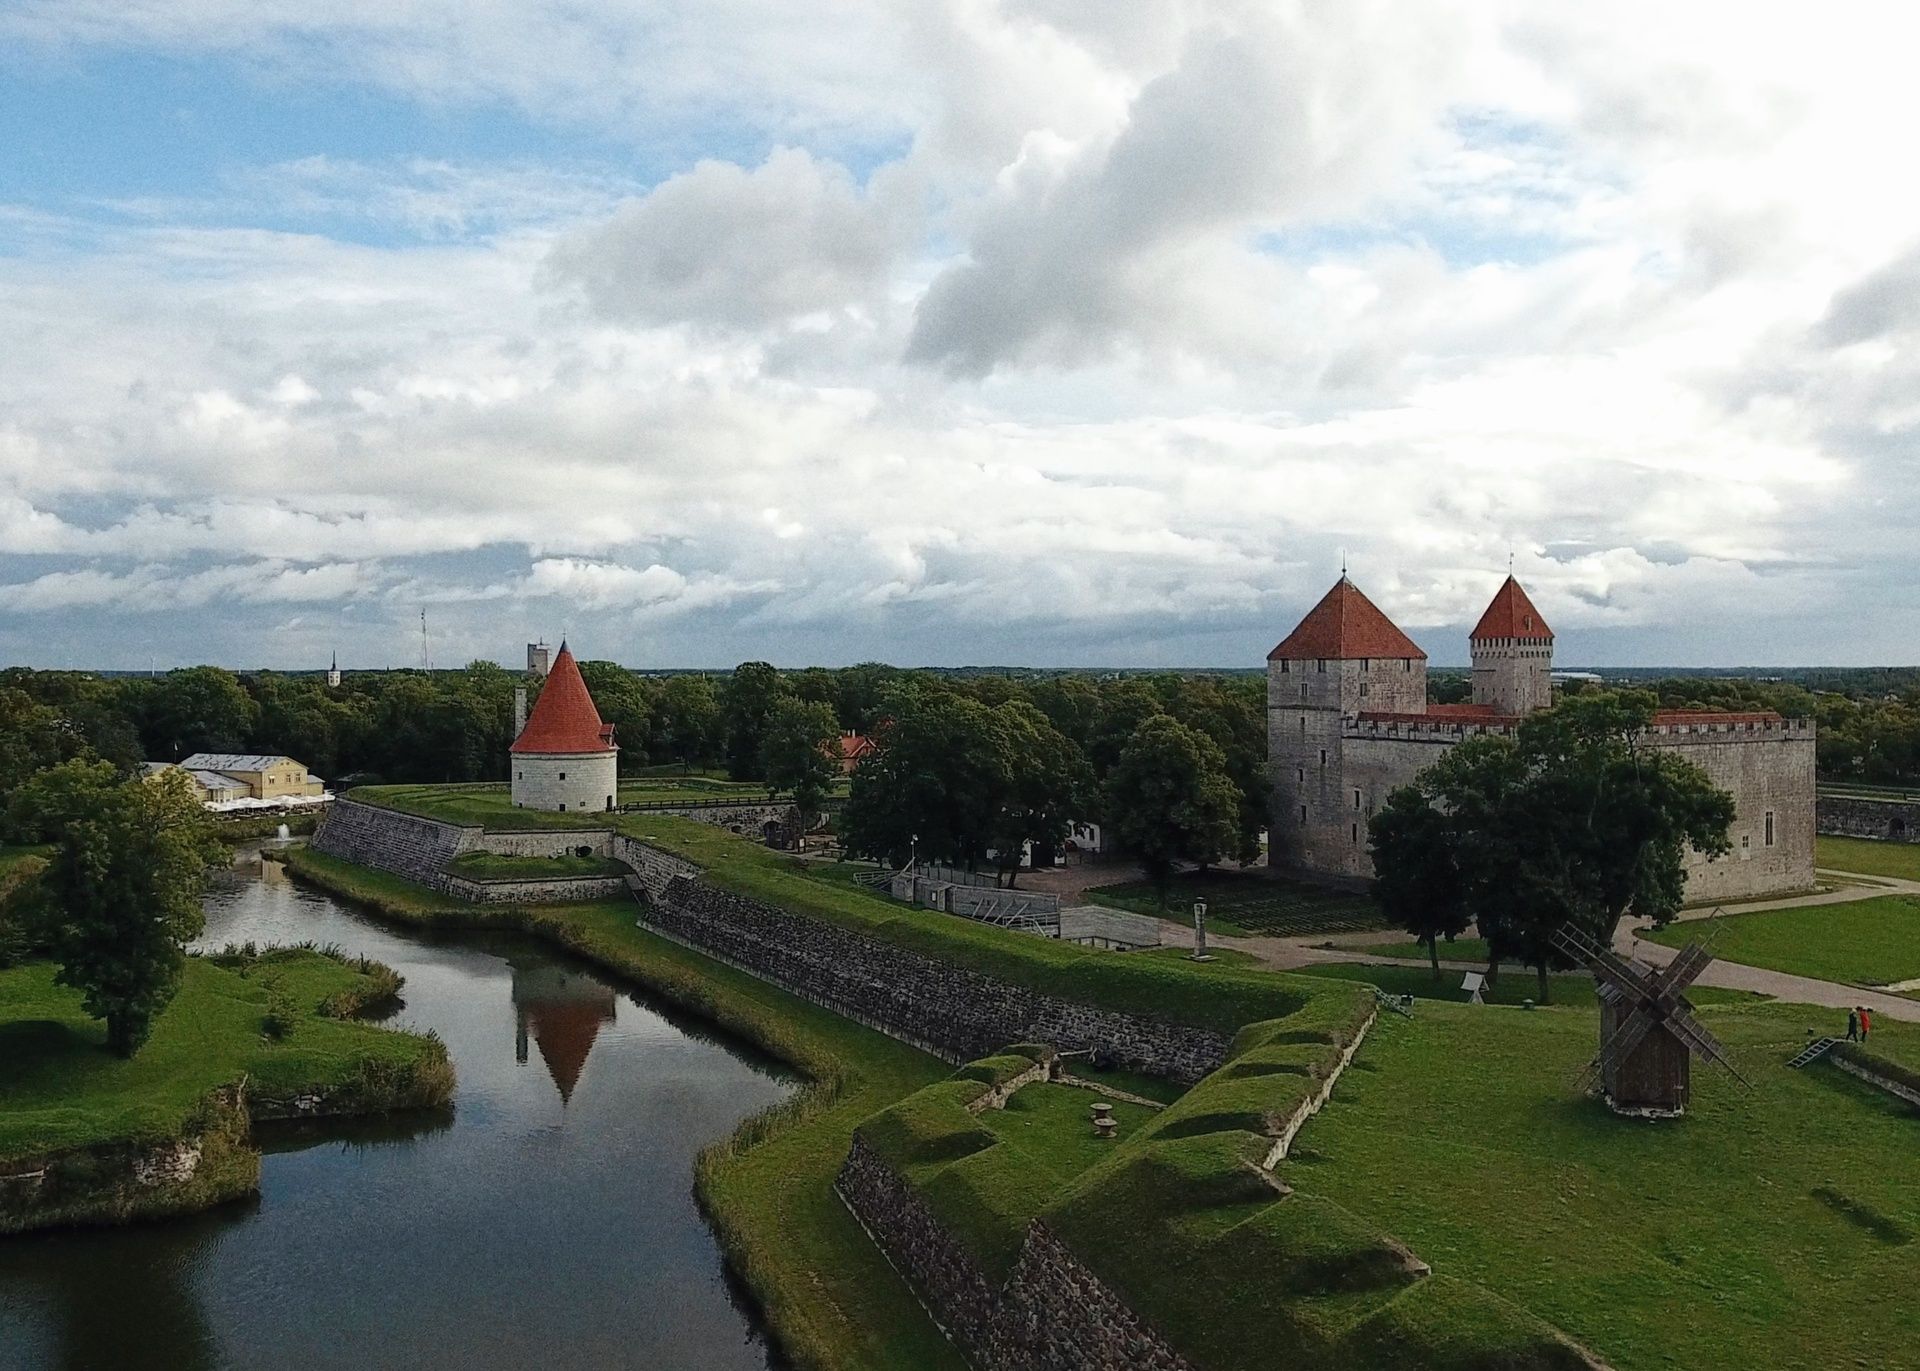 Bischofsburg in Kuressaare, Saaremaa